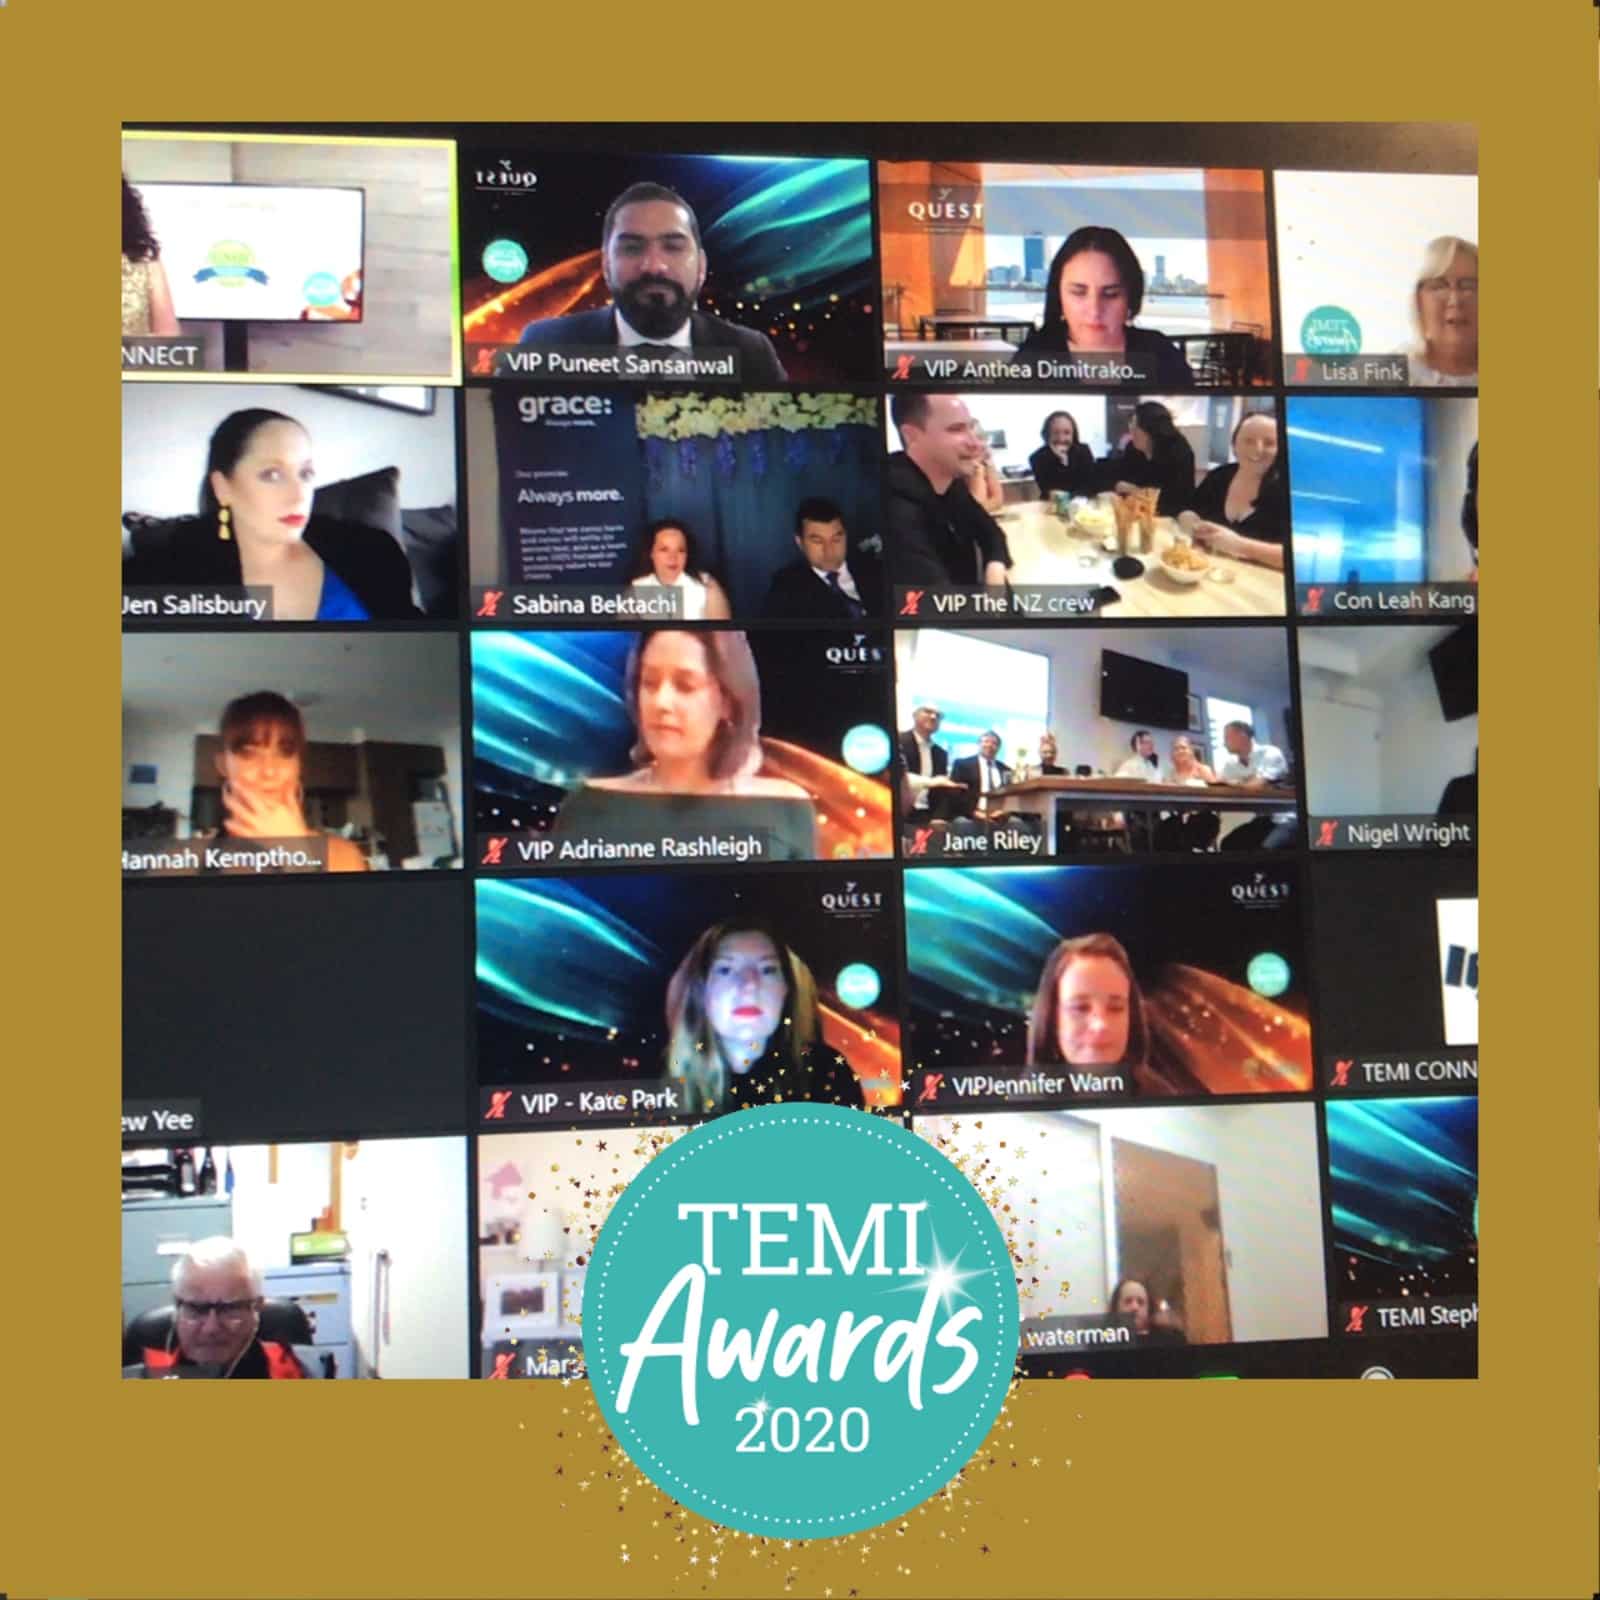 2020 TEMI Award Finalists Revealed